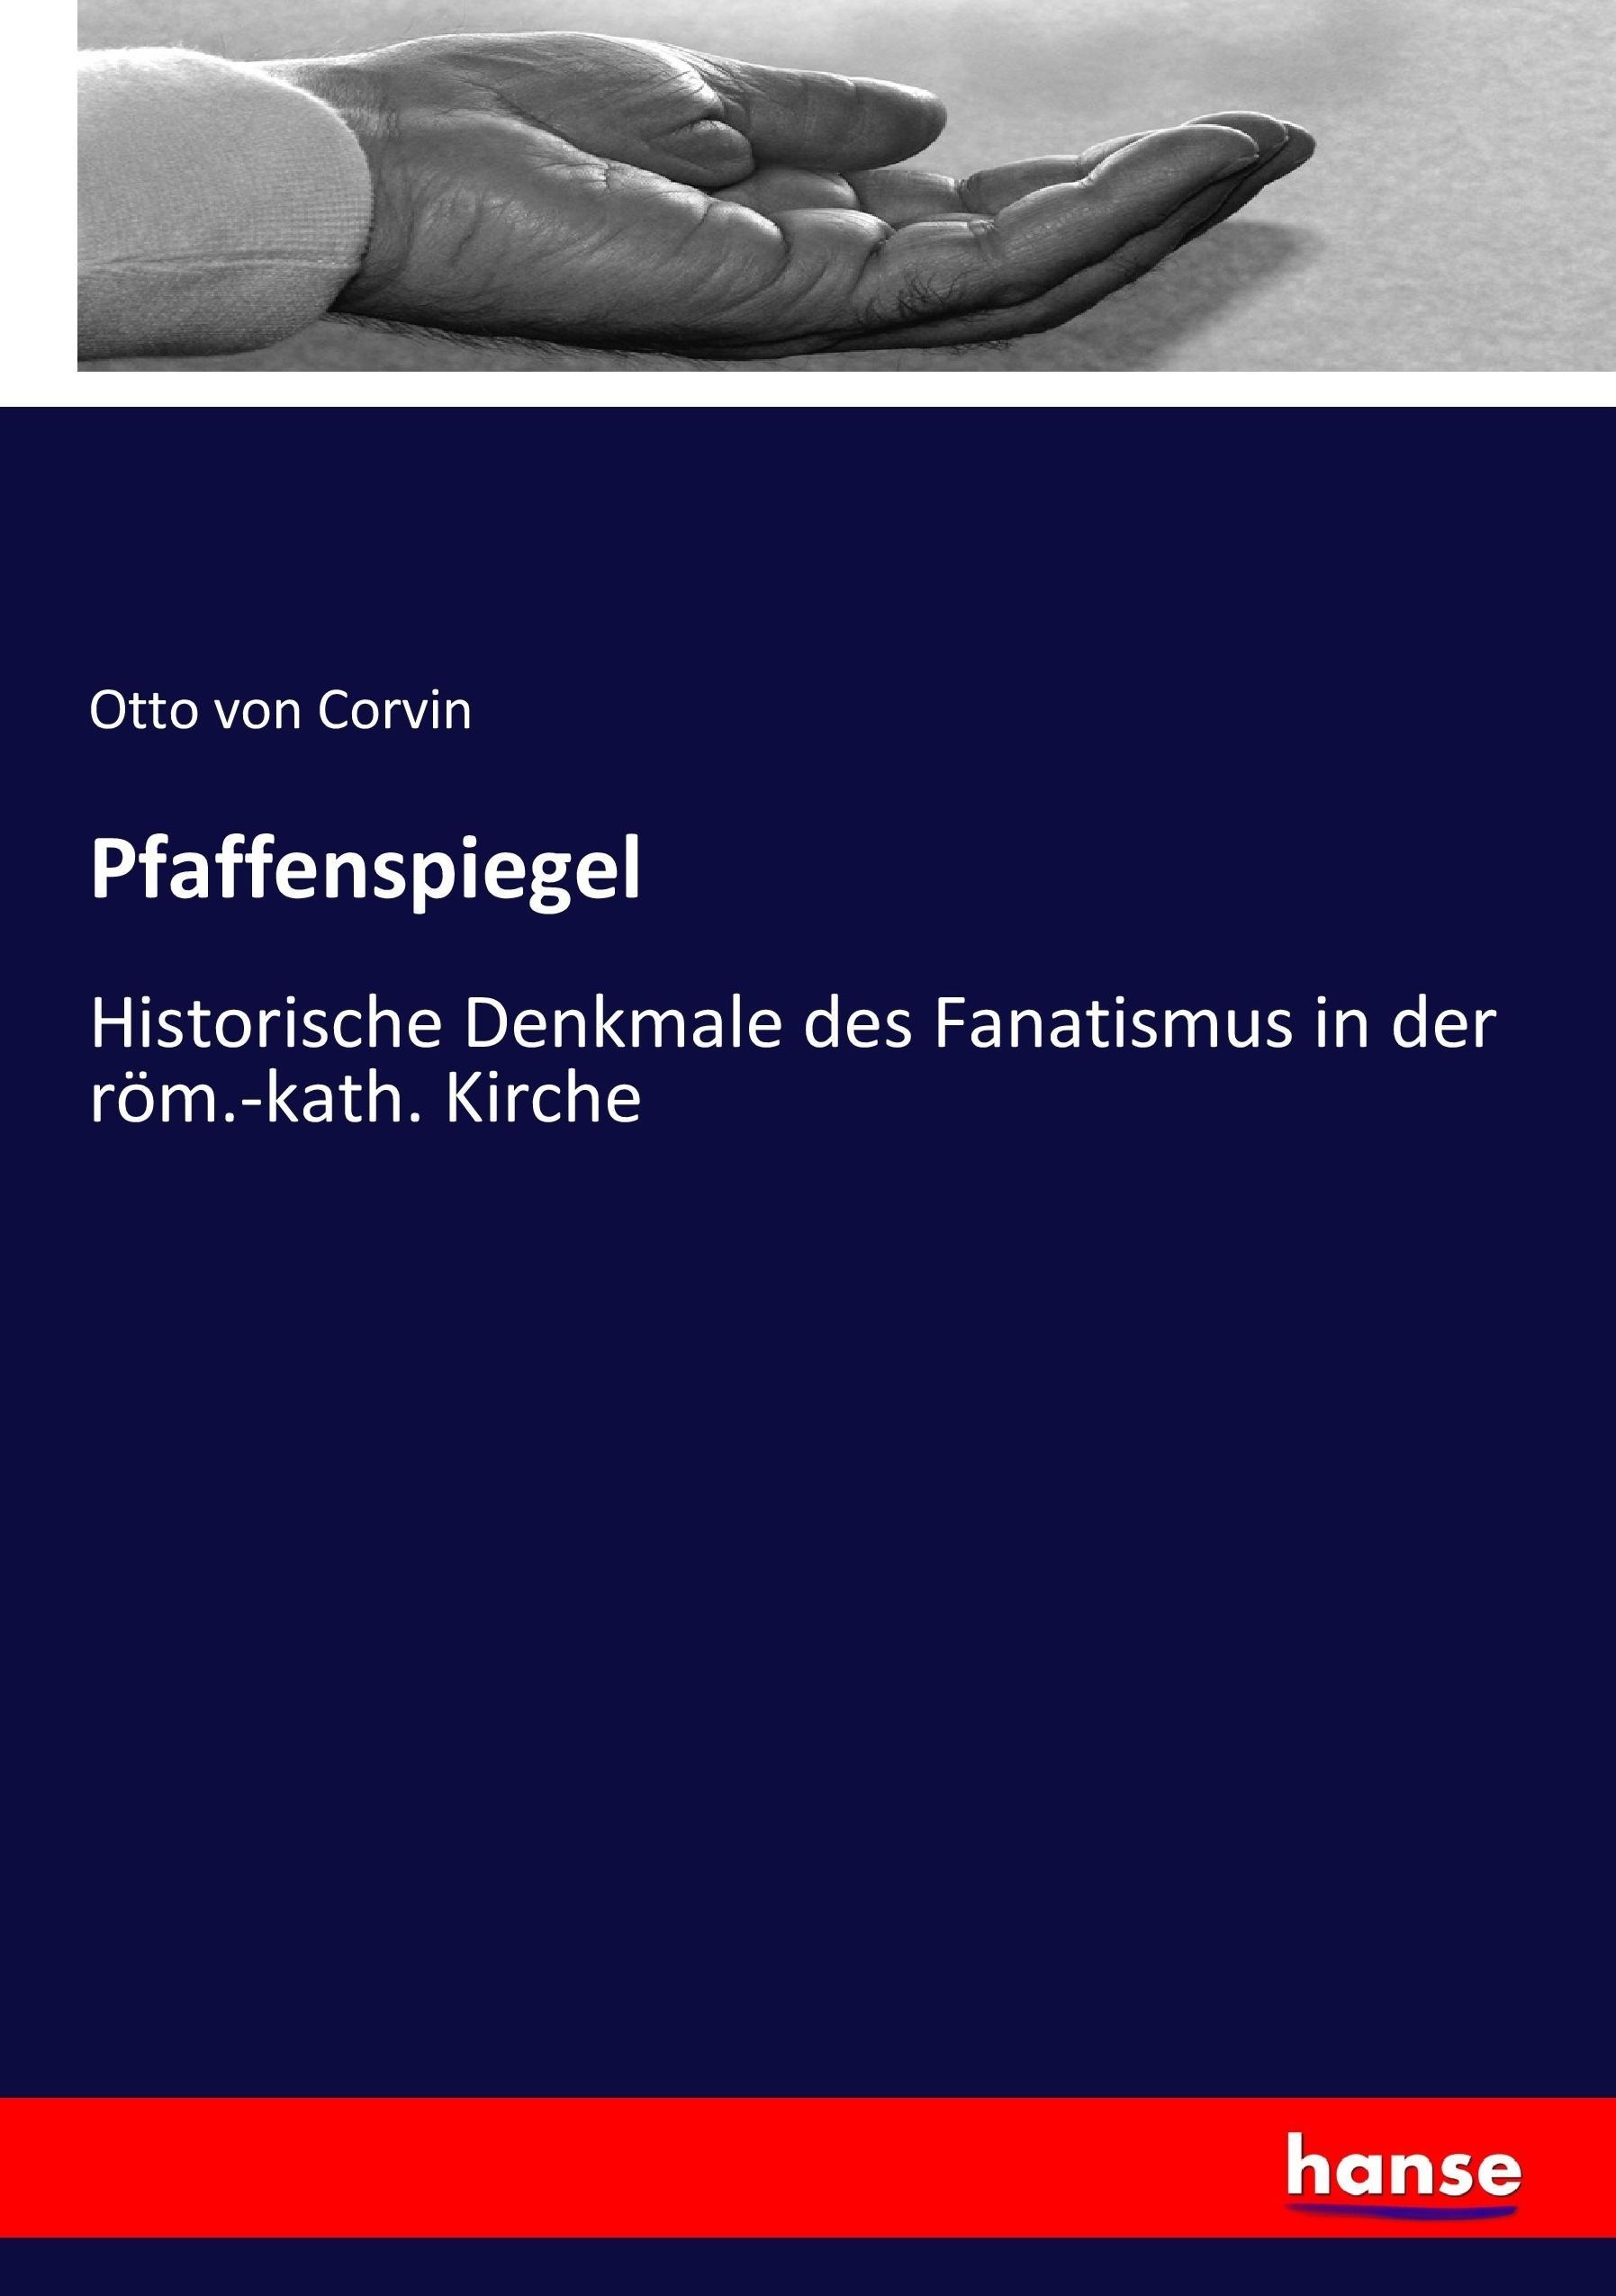 Pfaffenspiegel Otto von Corvin - Picture 1 of 1